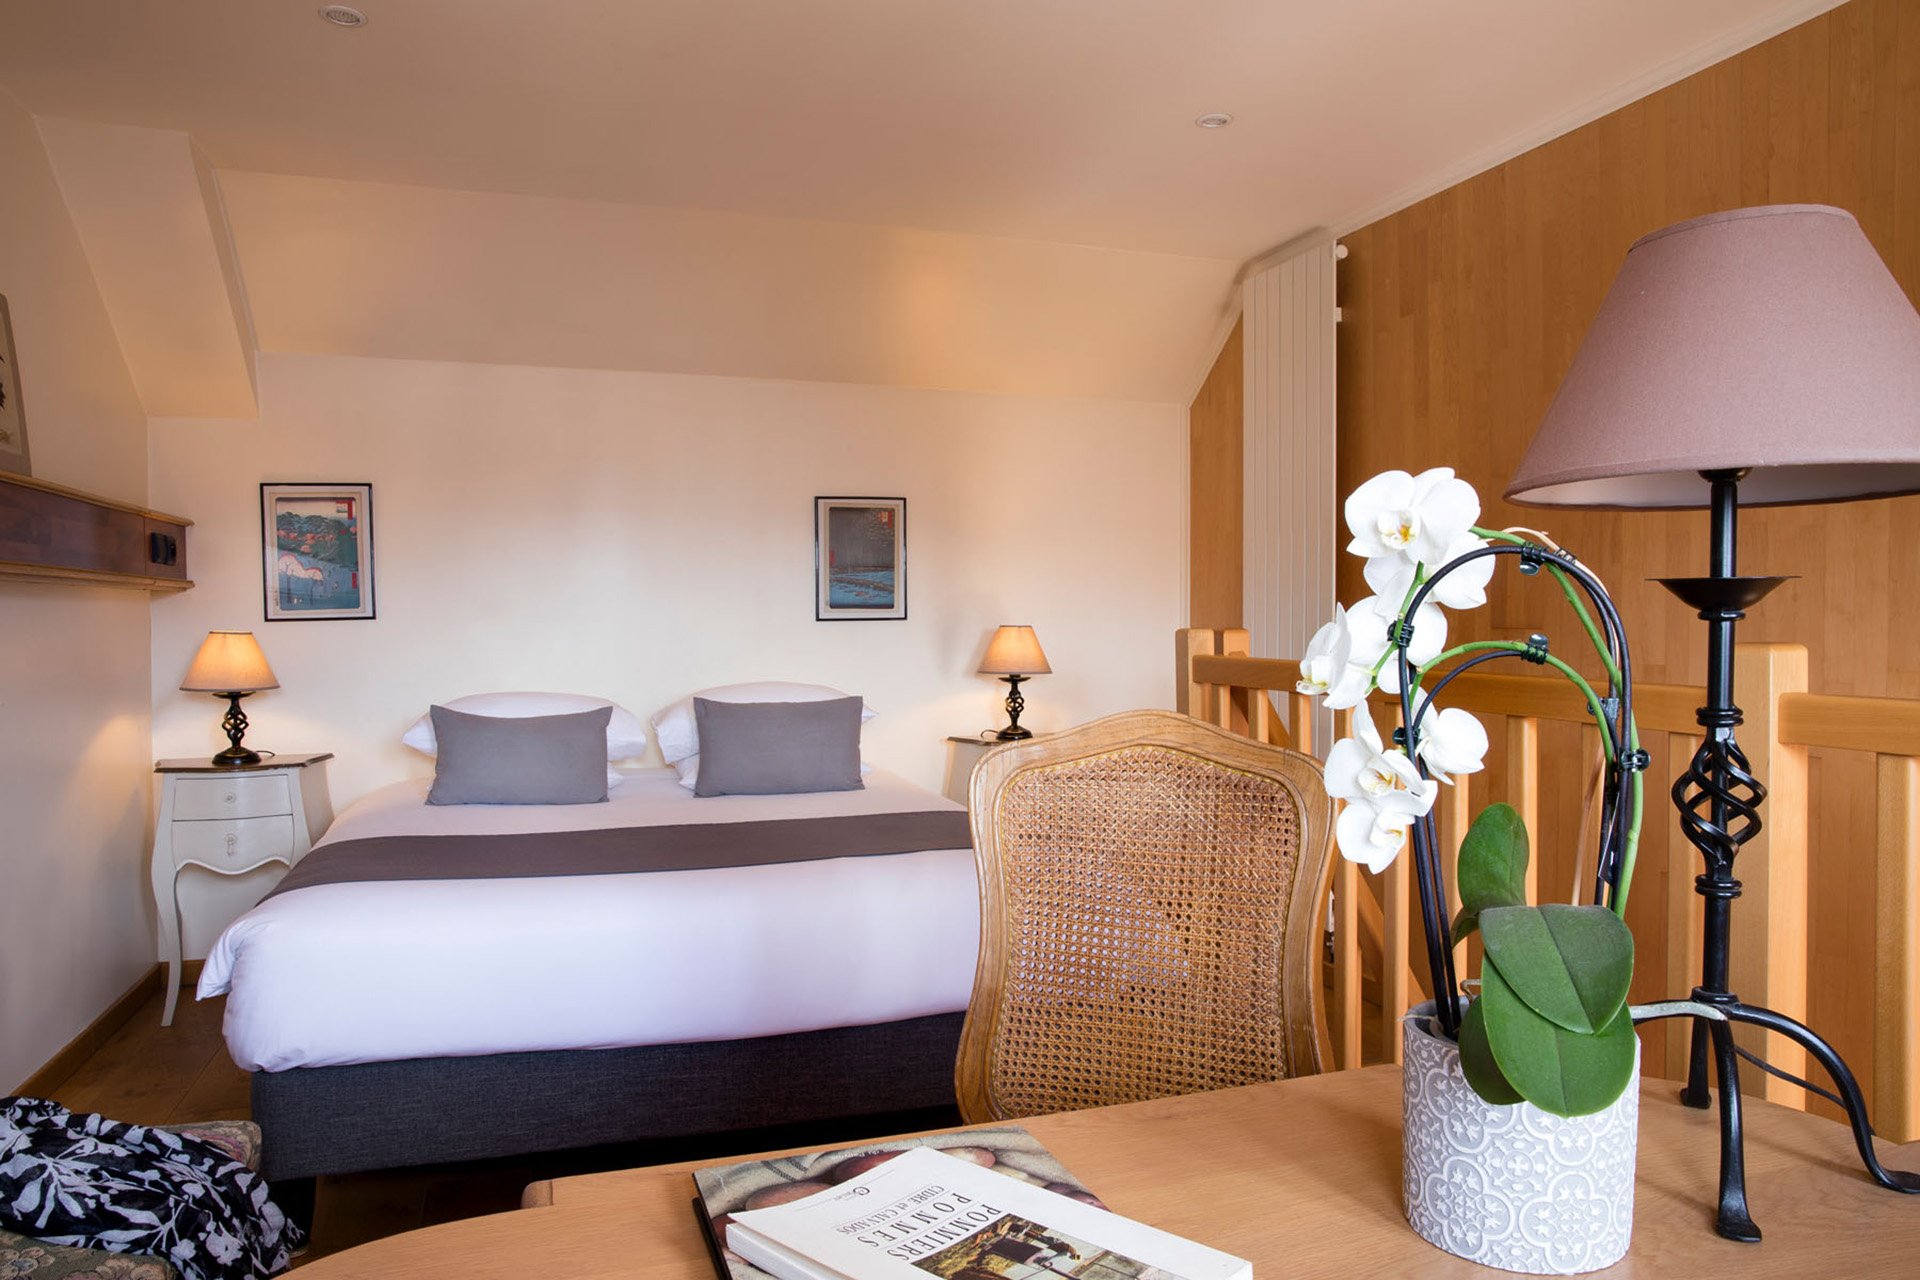 Chambre baldaquin romantique pour votre séjour en amoureux dans notre hôtel-spa-restaurant en Normandie près de Deauville et de Caen à Pont-L'Evêque